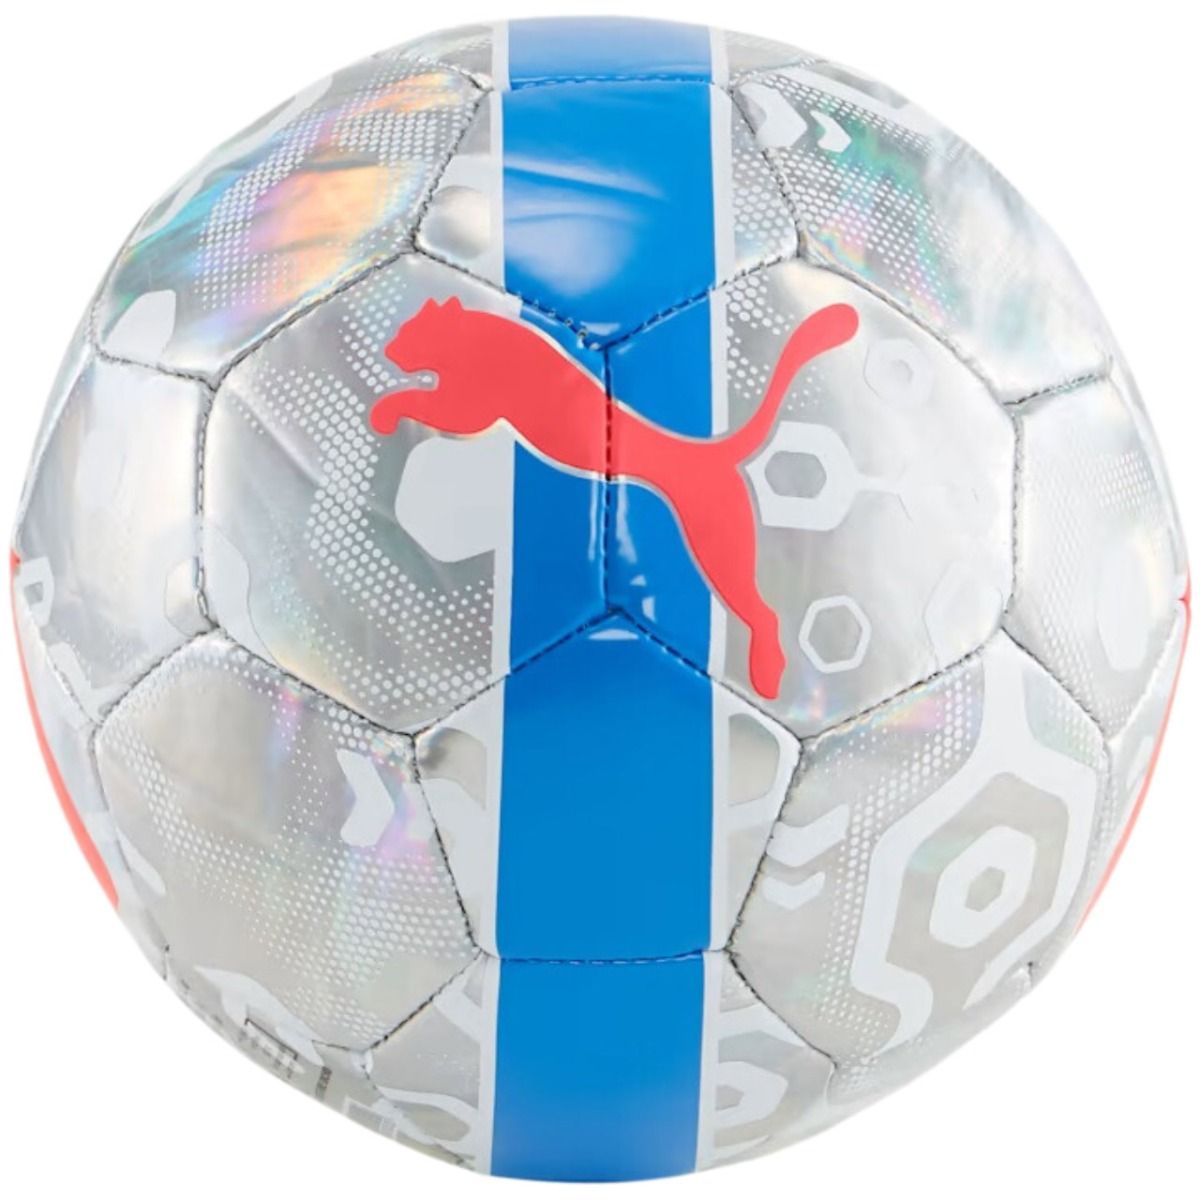 PUMA Fußball Cup miniball 84076 01